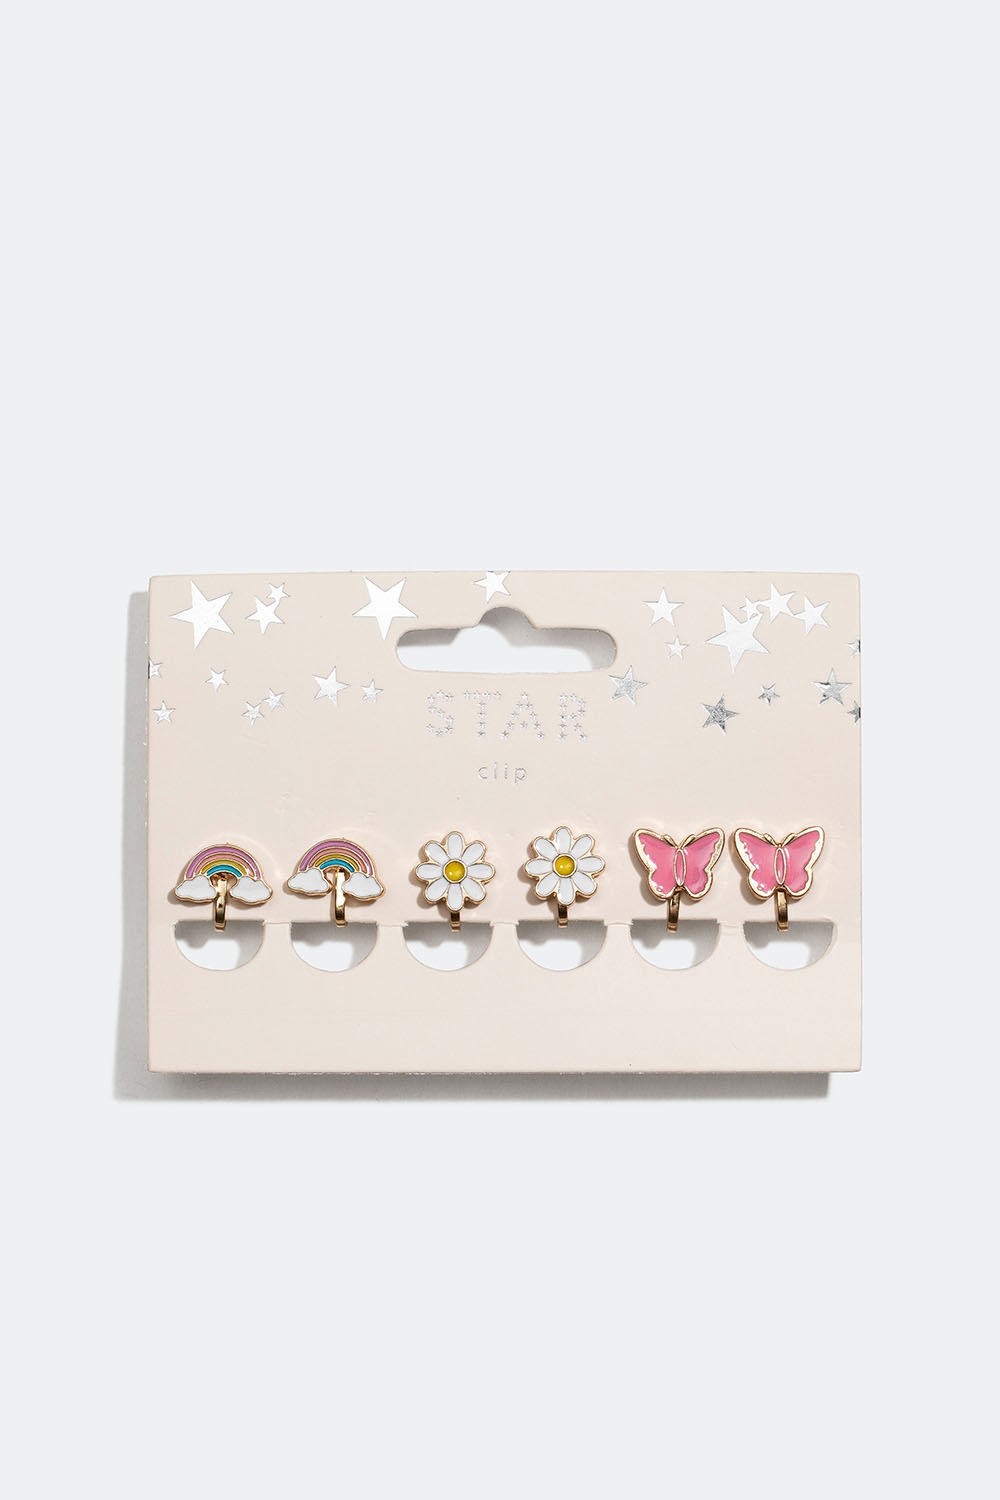 Clipsörhängen med regnbågar, blommor och fjärilar, 3-pack i gruppen Barn / Barnsmycken hos Glitter (402000029900)